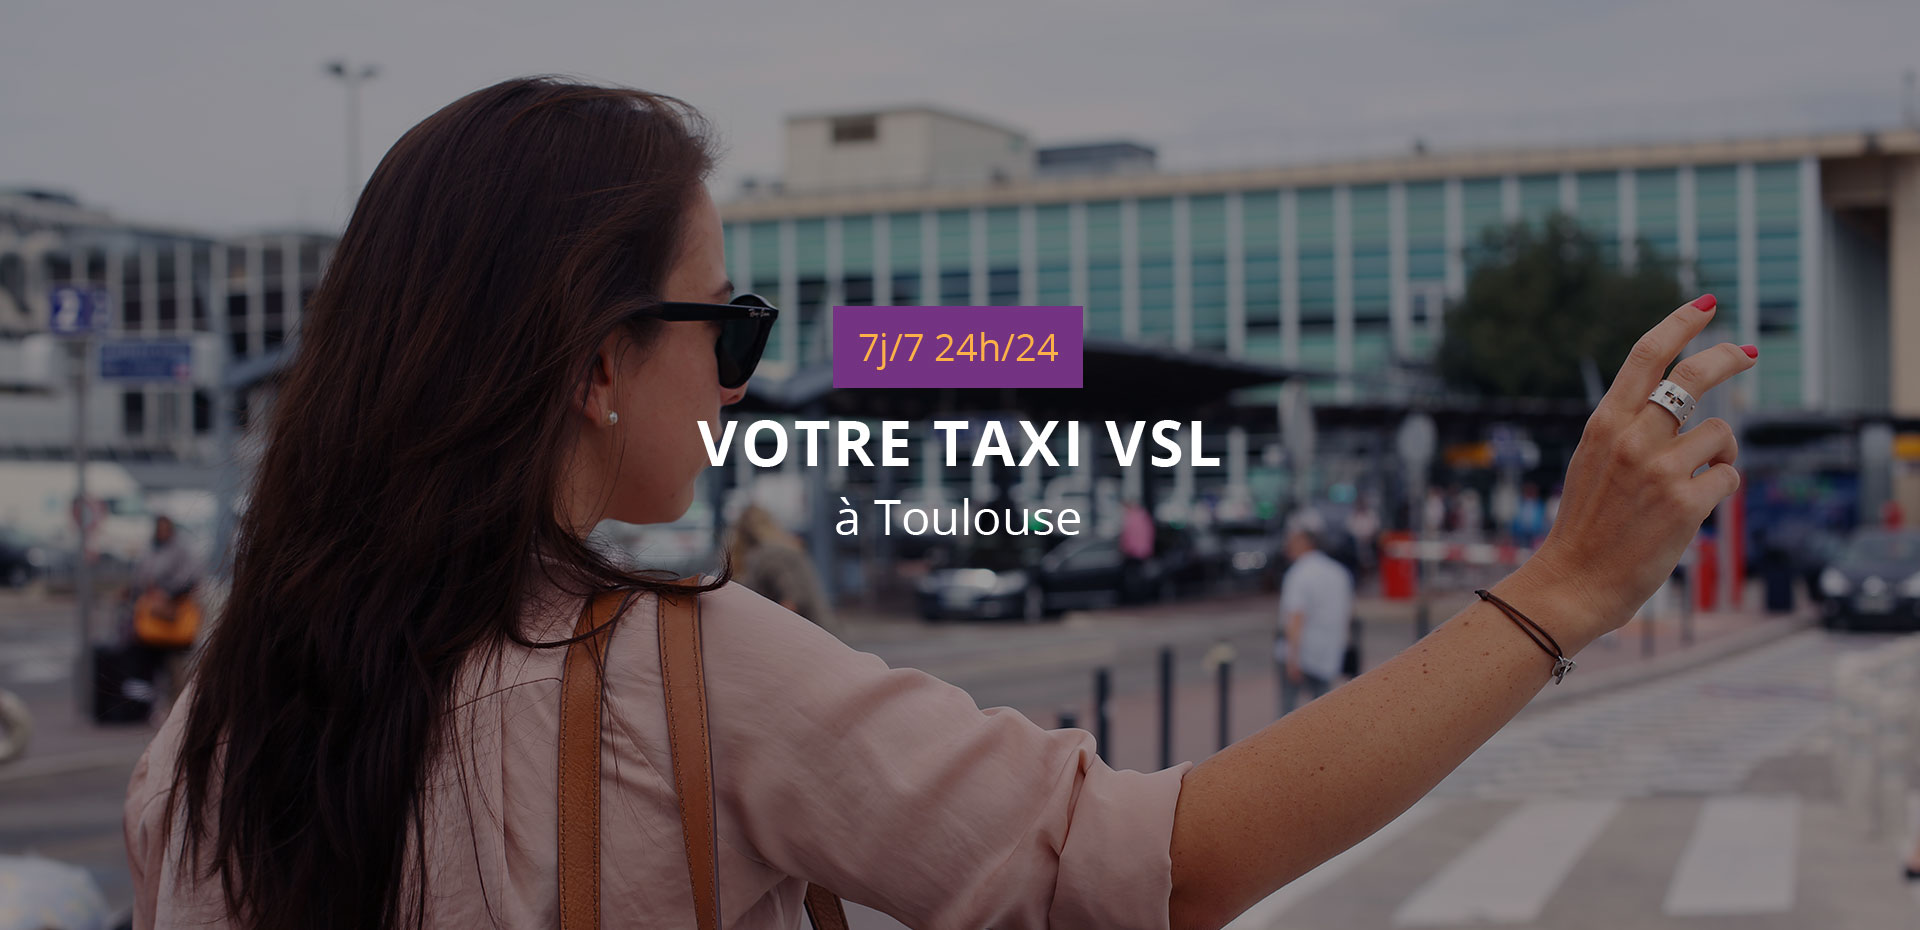 Réserver navette aéroport Toulouse - TAXI TLS